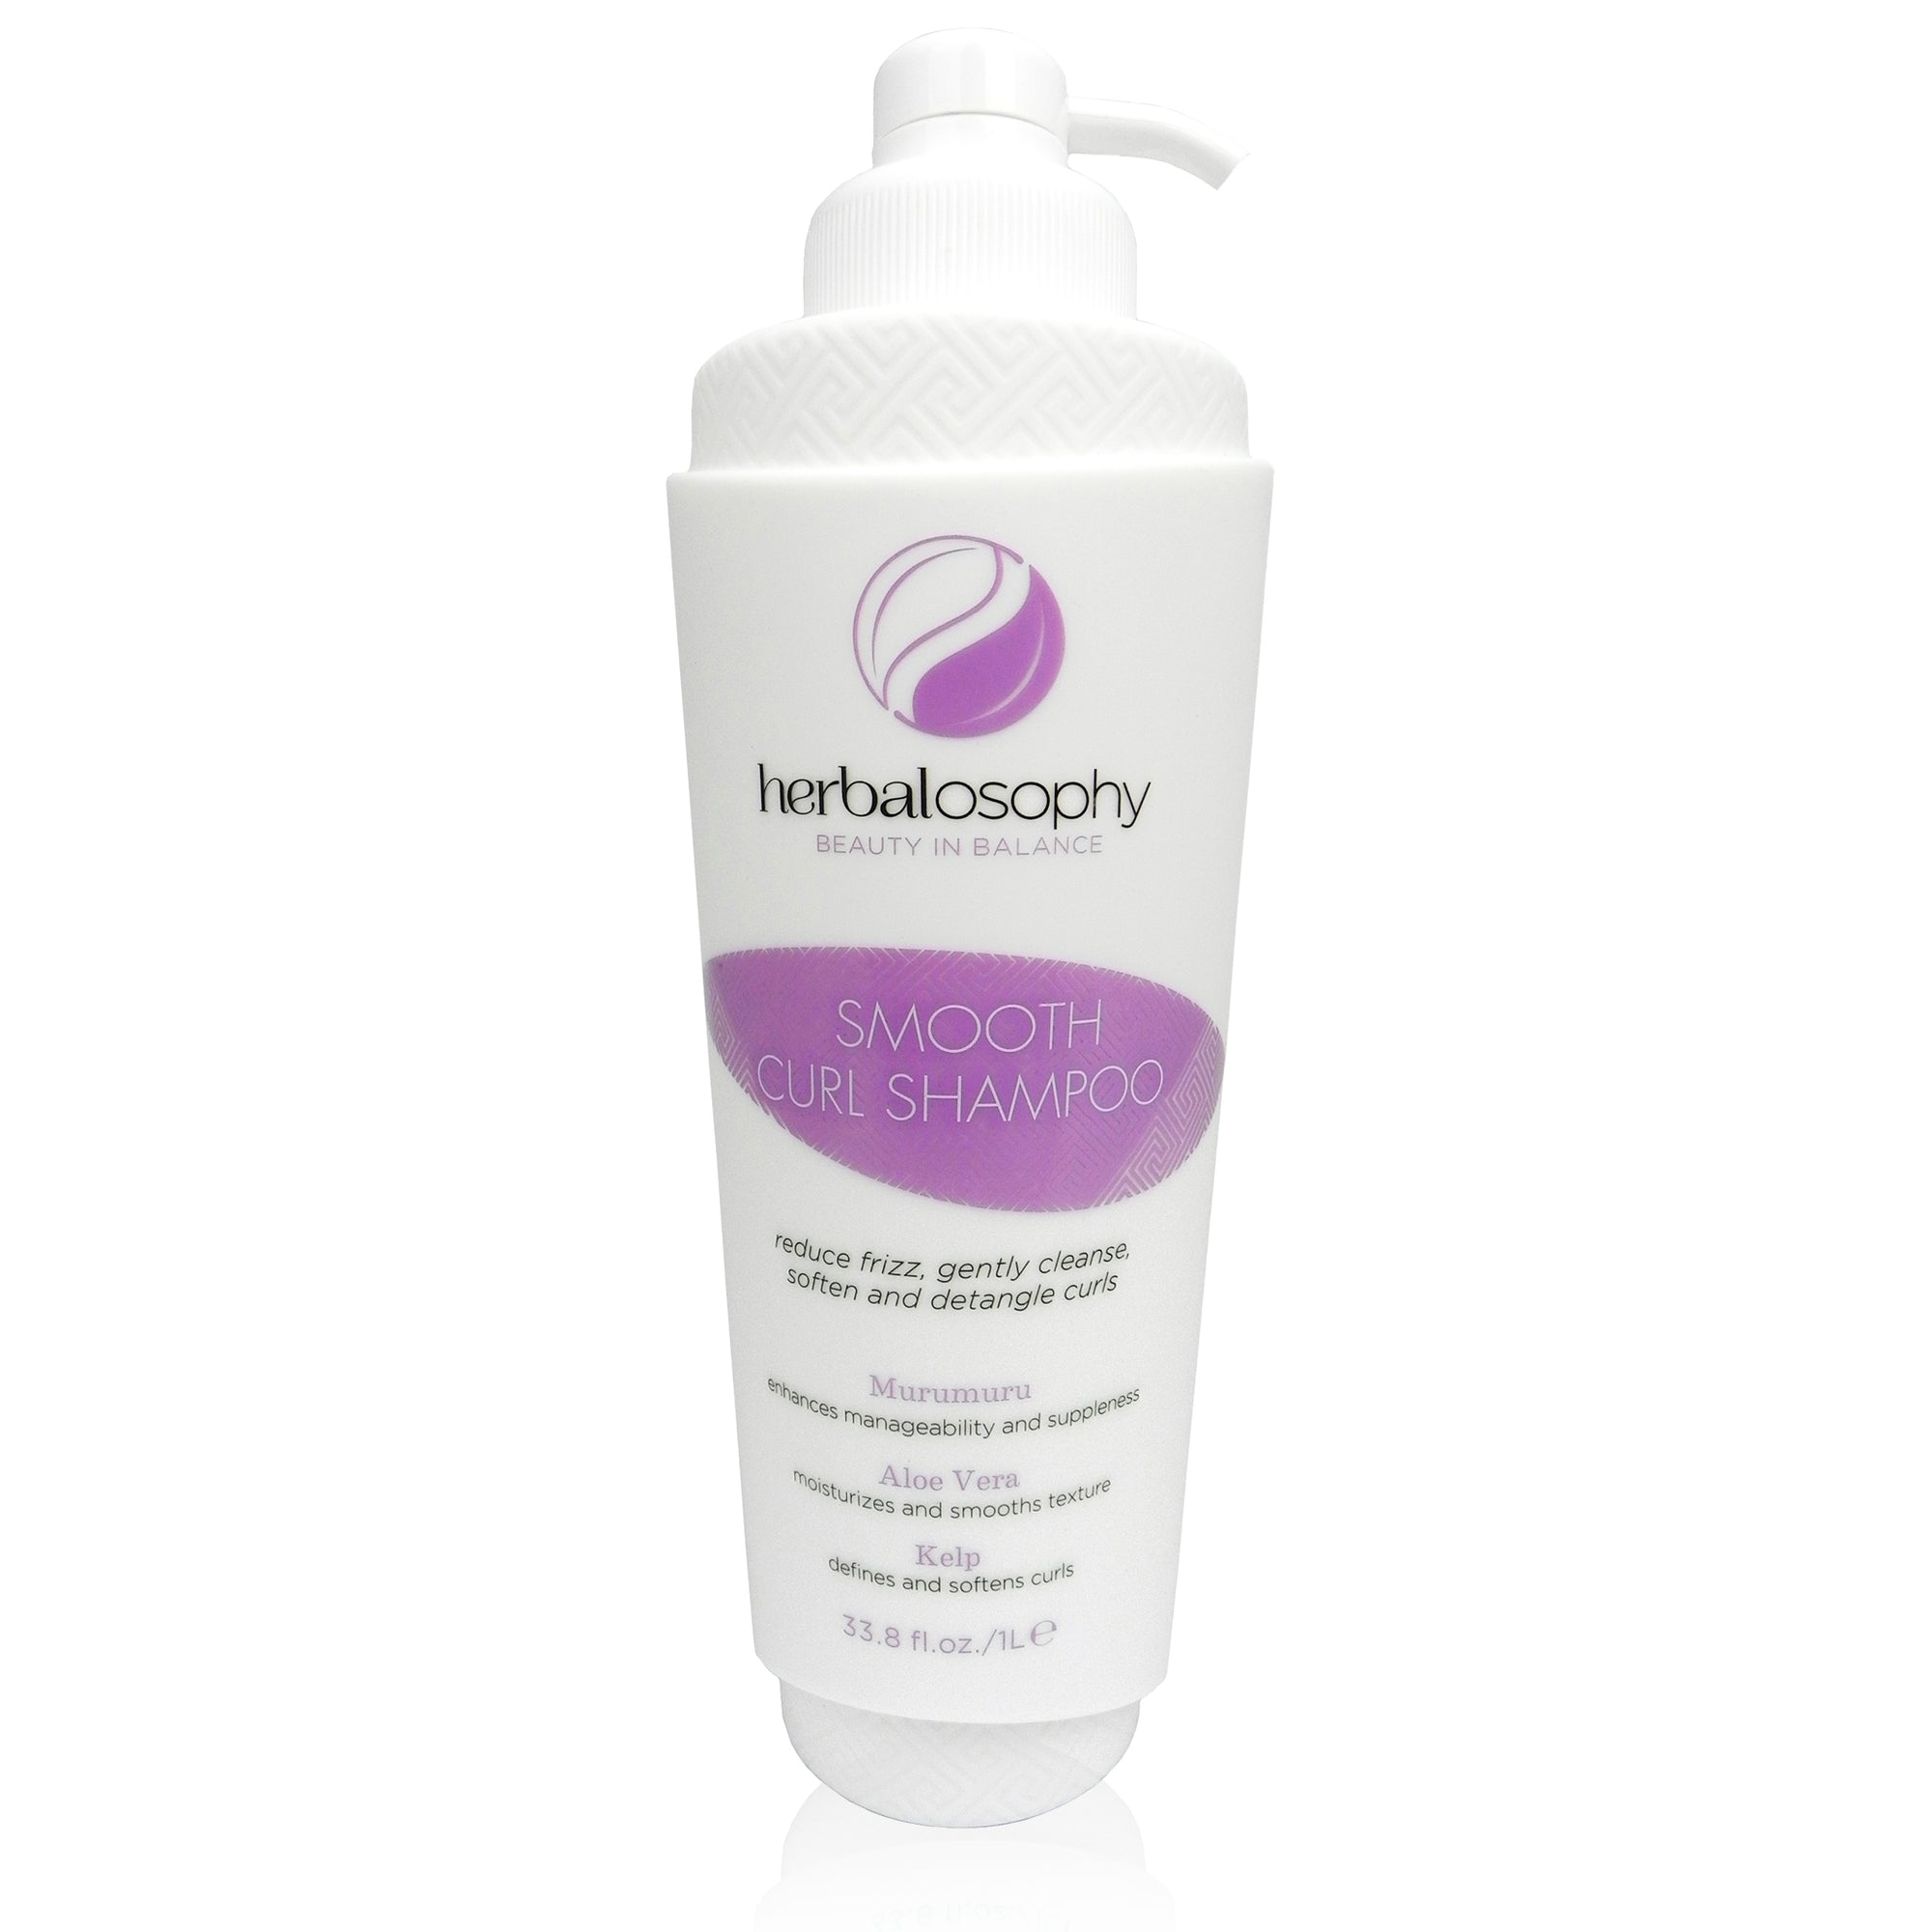 Herbalosophy Smooth Curl Shampoo bottle 33.8oz